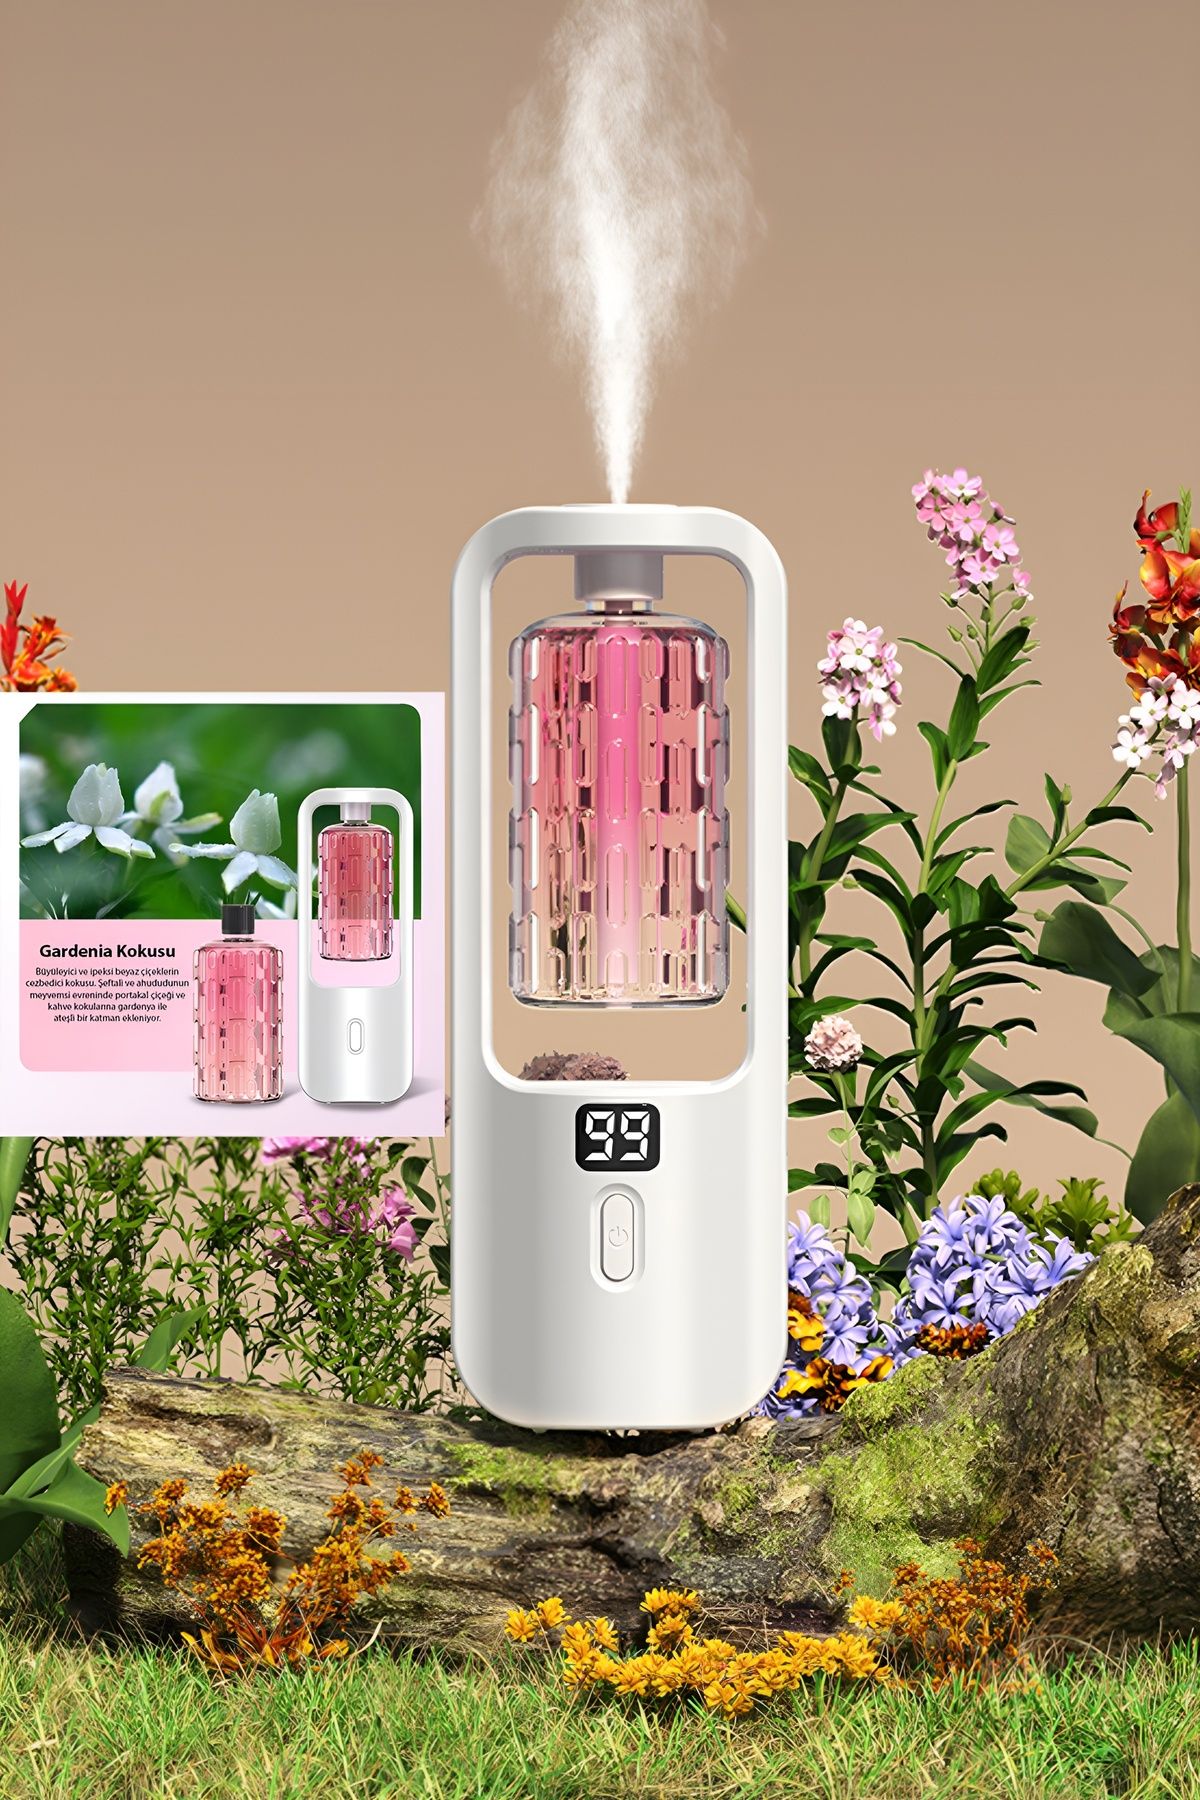 TeknoExpress 3 Modlu Otomatik Aromaterapi 1500mah Şarjlı Yeni Nesil Koku Makinesi Işıklı Pembe (Gardenia Kokusu)